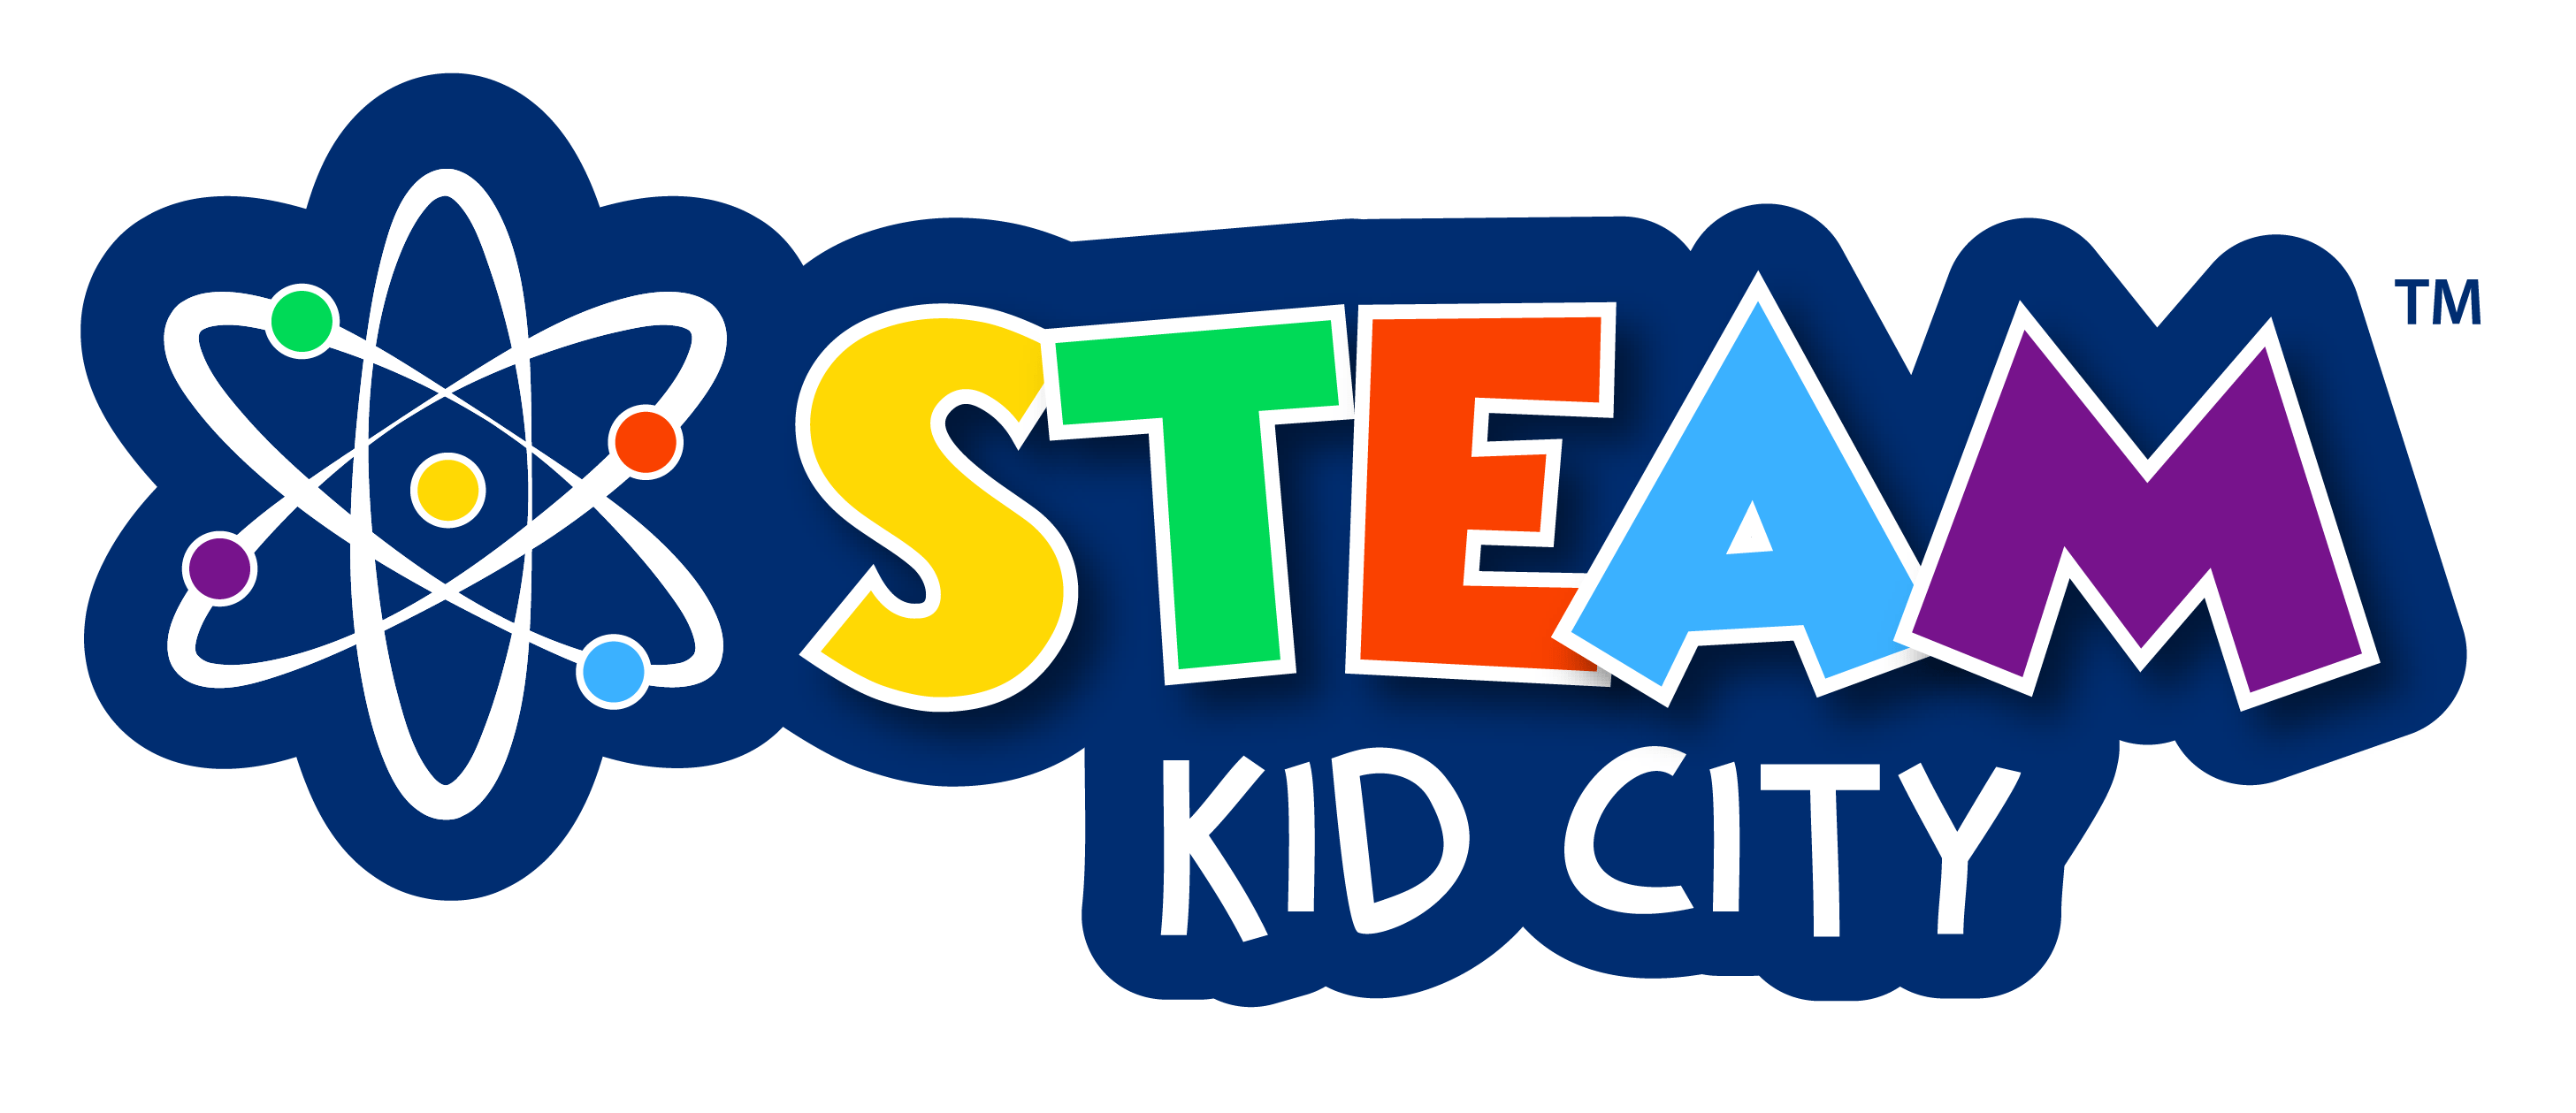 Steam Kid City Logo